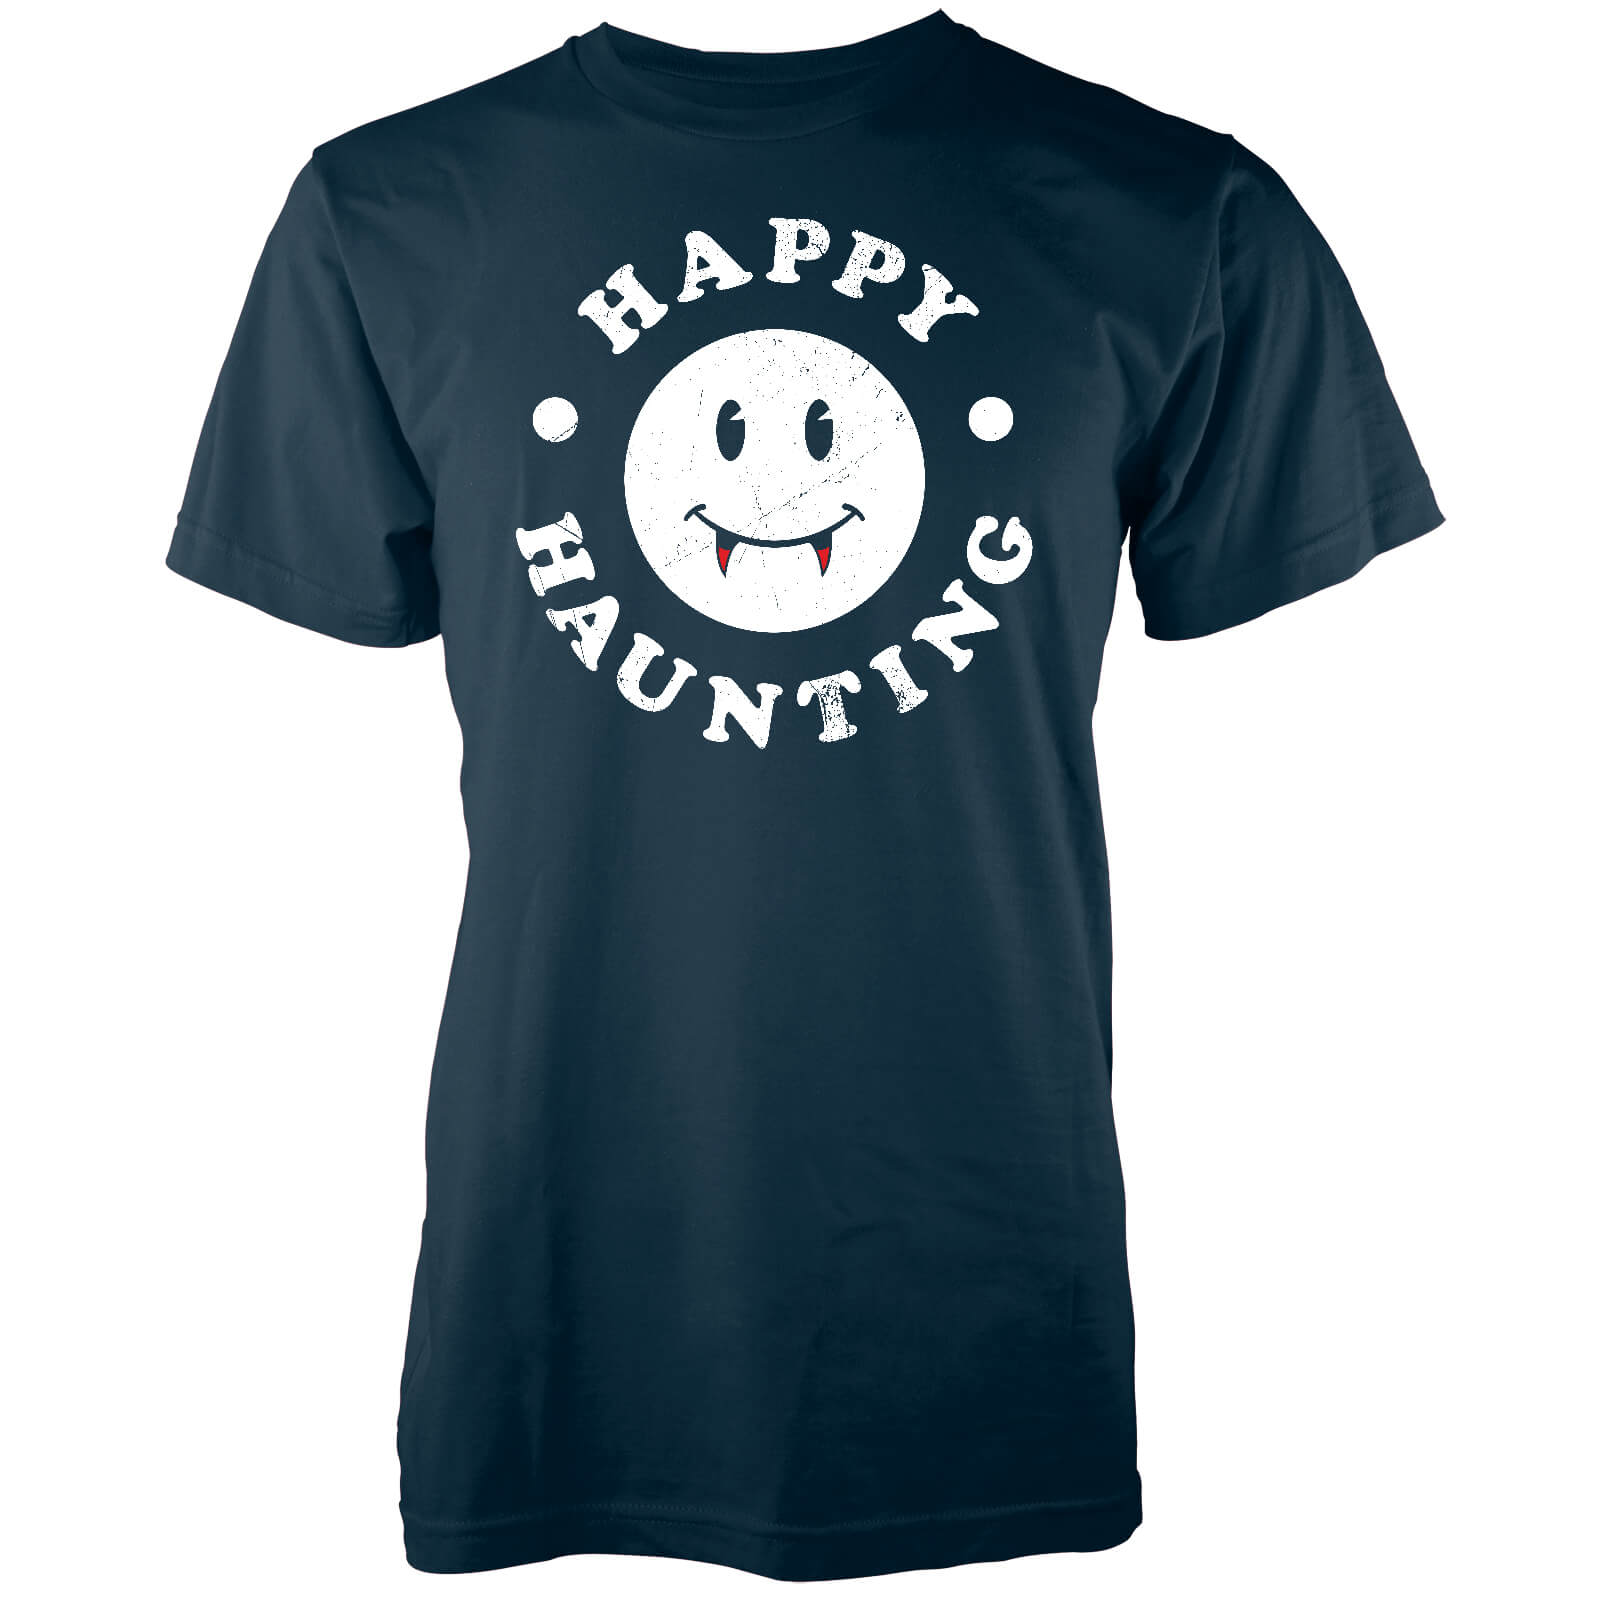 Happy Haunting Men's Navy T-Shirt - S - Navy